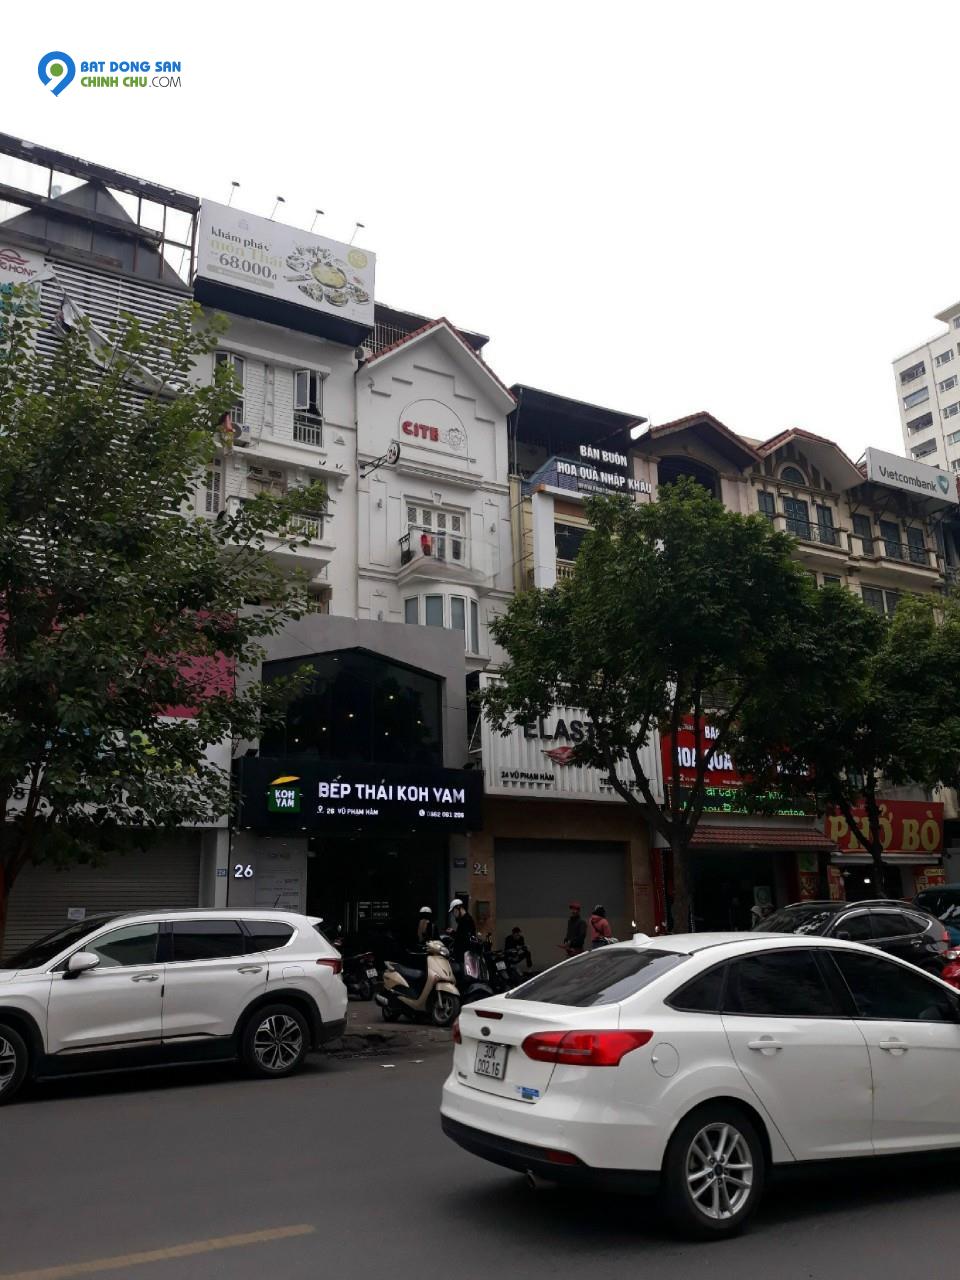 Cho thuê nhà mặt phố Vũ Phạm Hàm 120m2x 5T, làm nhà hàng, café, massage